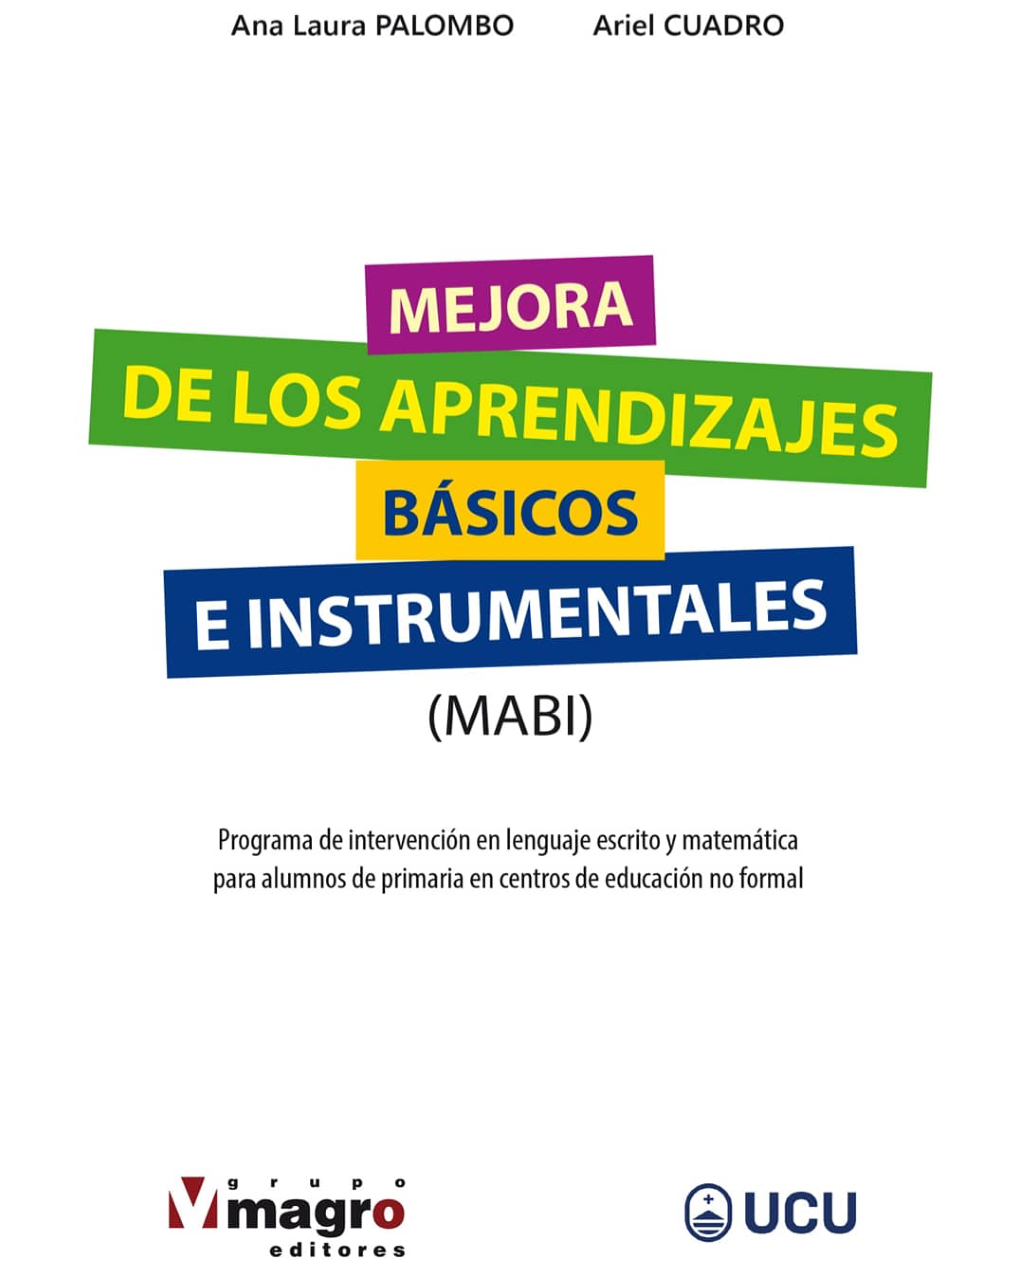 Grupo Magro Editores publicó “MEJORA DE LOS APRENDIZAJES BÁSICOS E INSTRUMENTALES” (MABI)